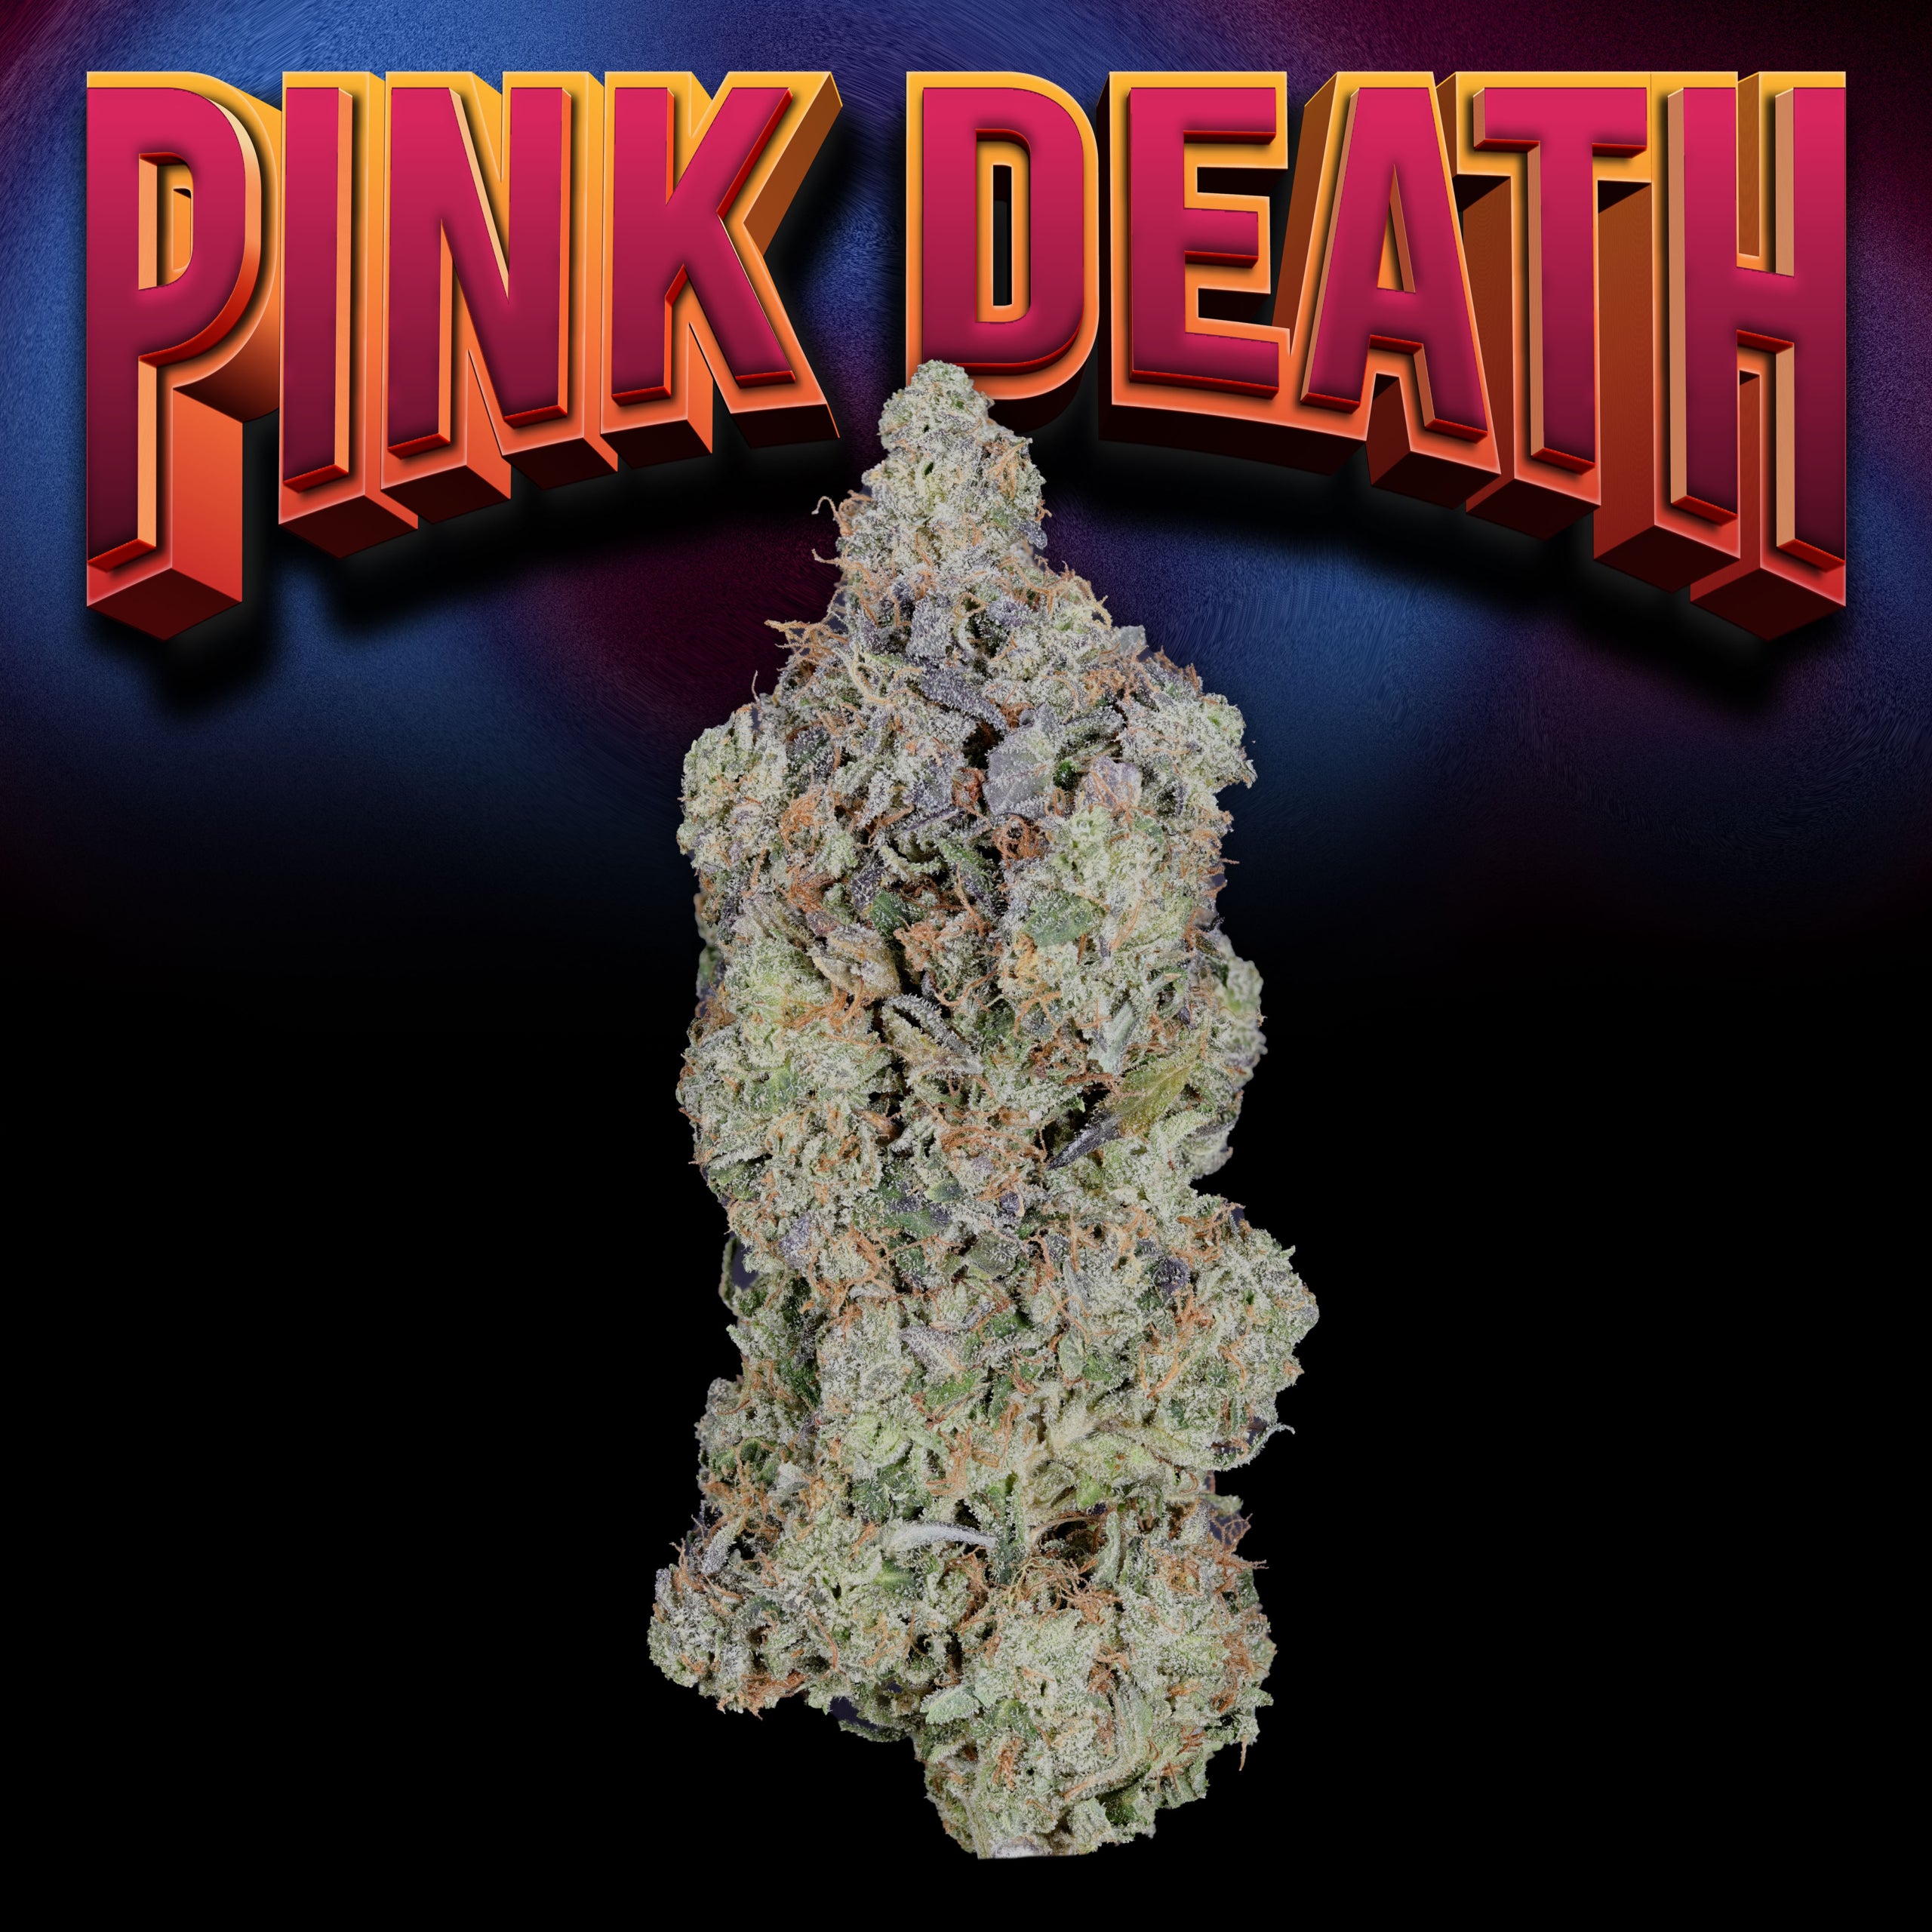 Pink Deathj Bud